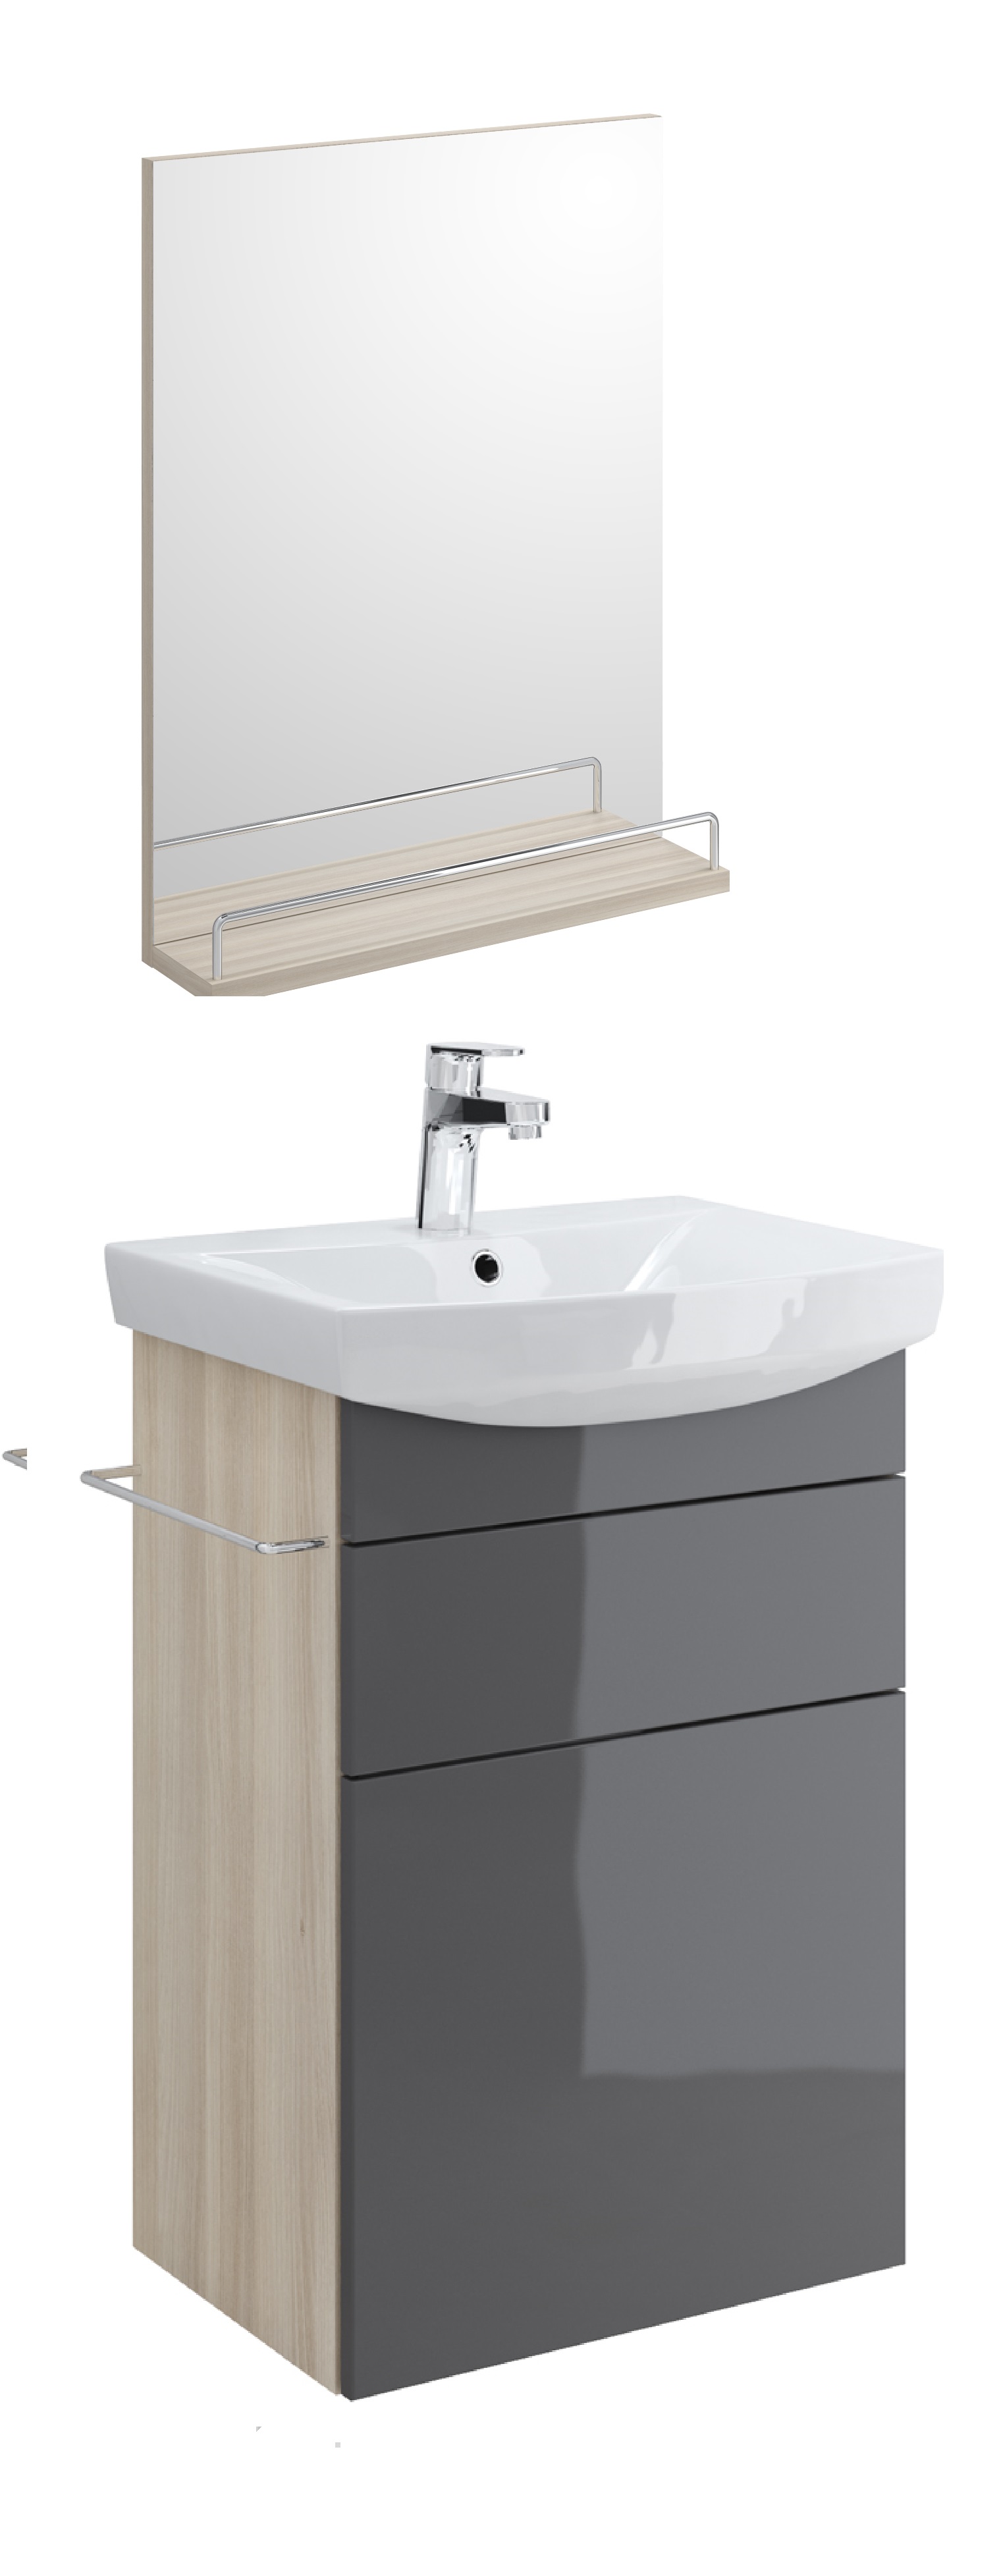 Мебель для ванной Cersanit Smart 55